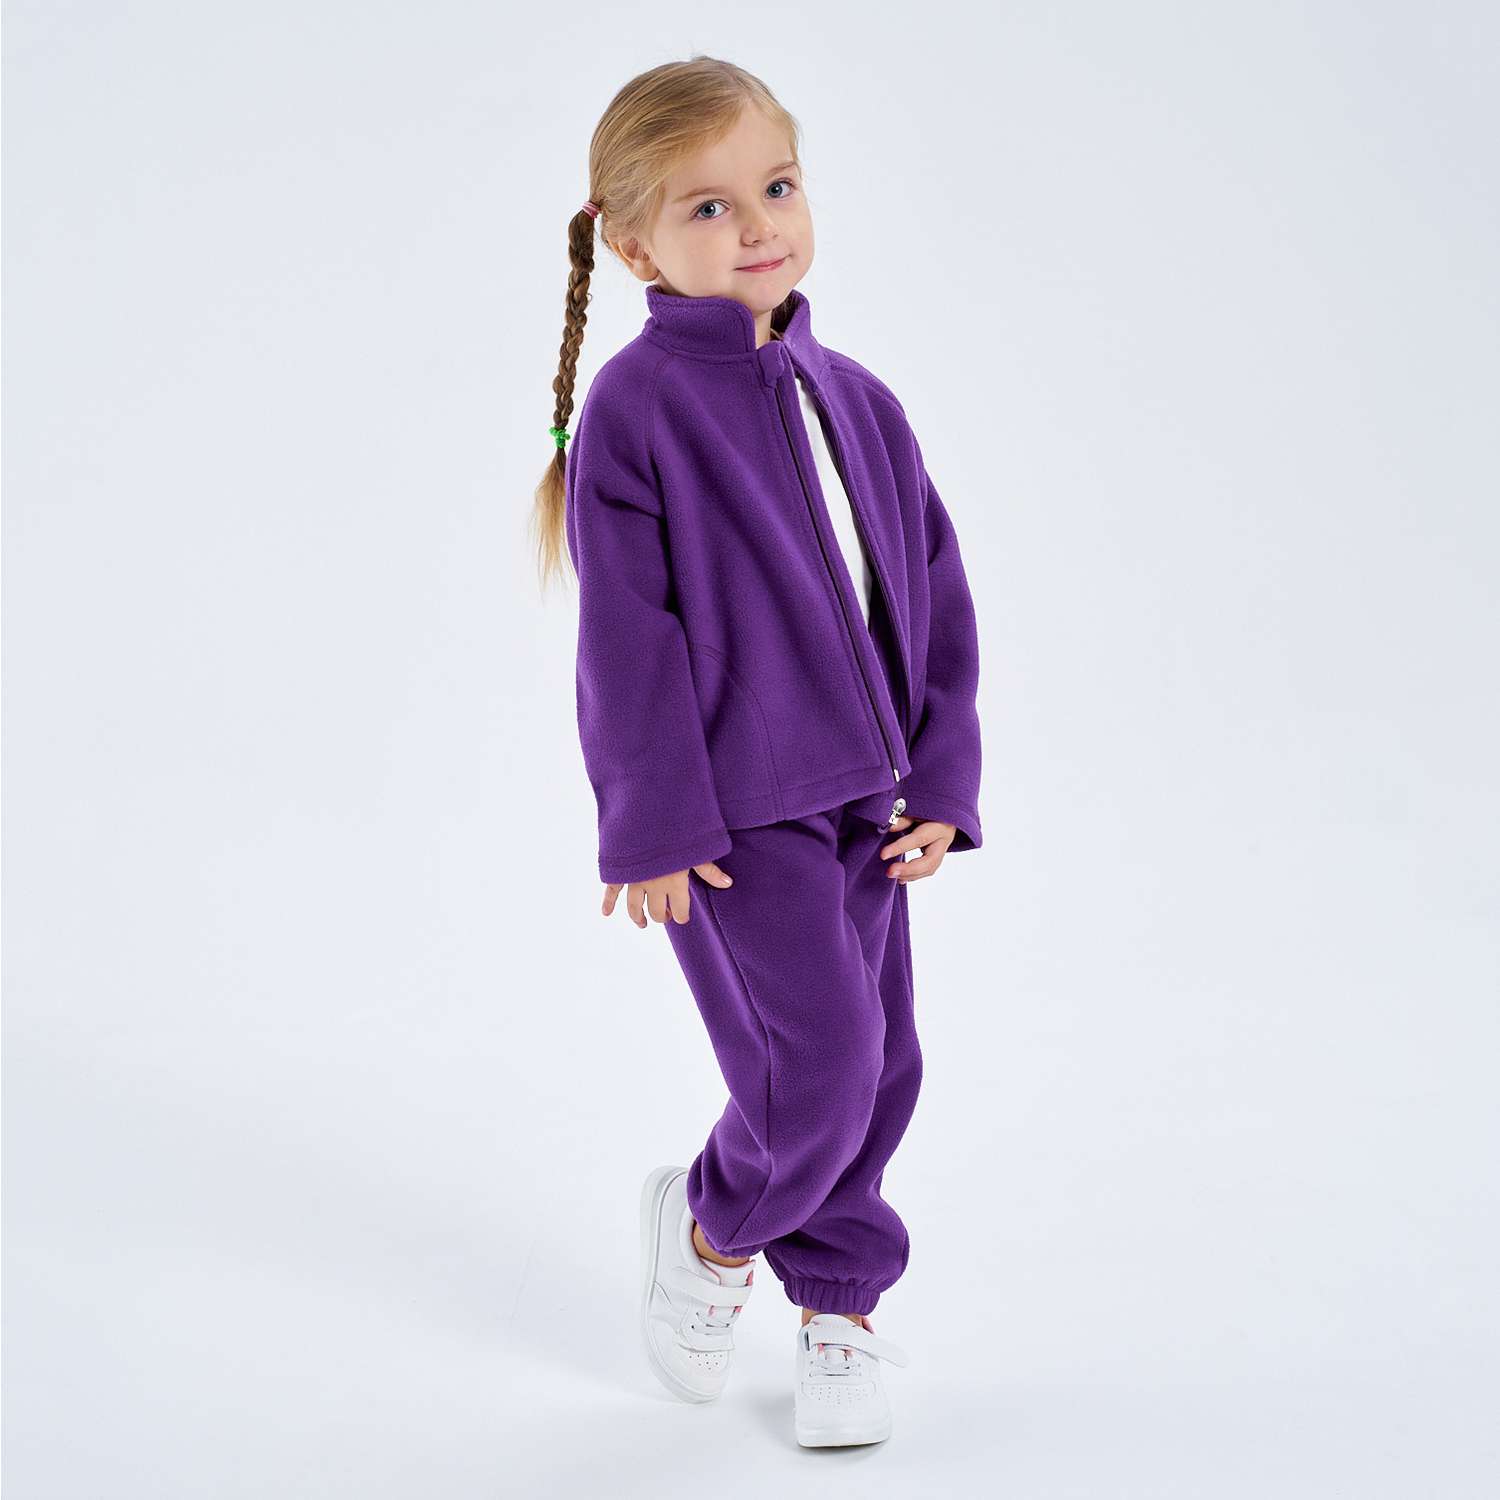 Костюм CHILDREAM костюм флисовый поддева фиолетовый - фото 2